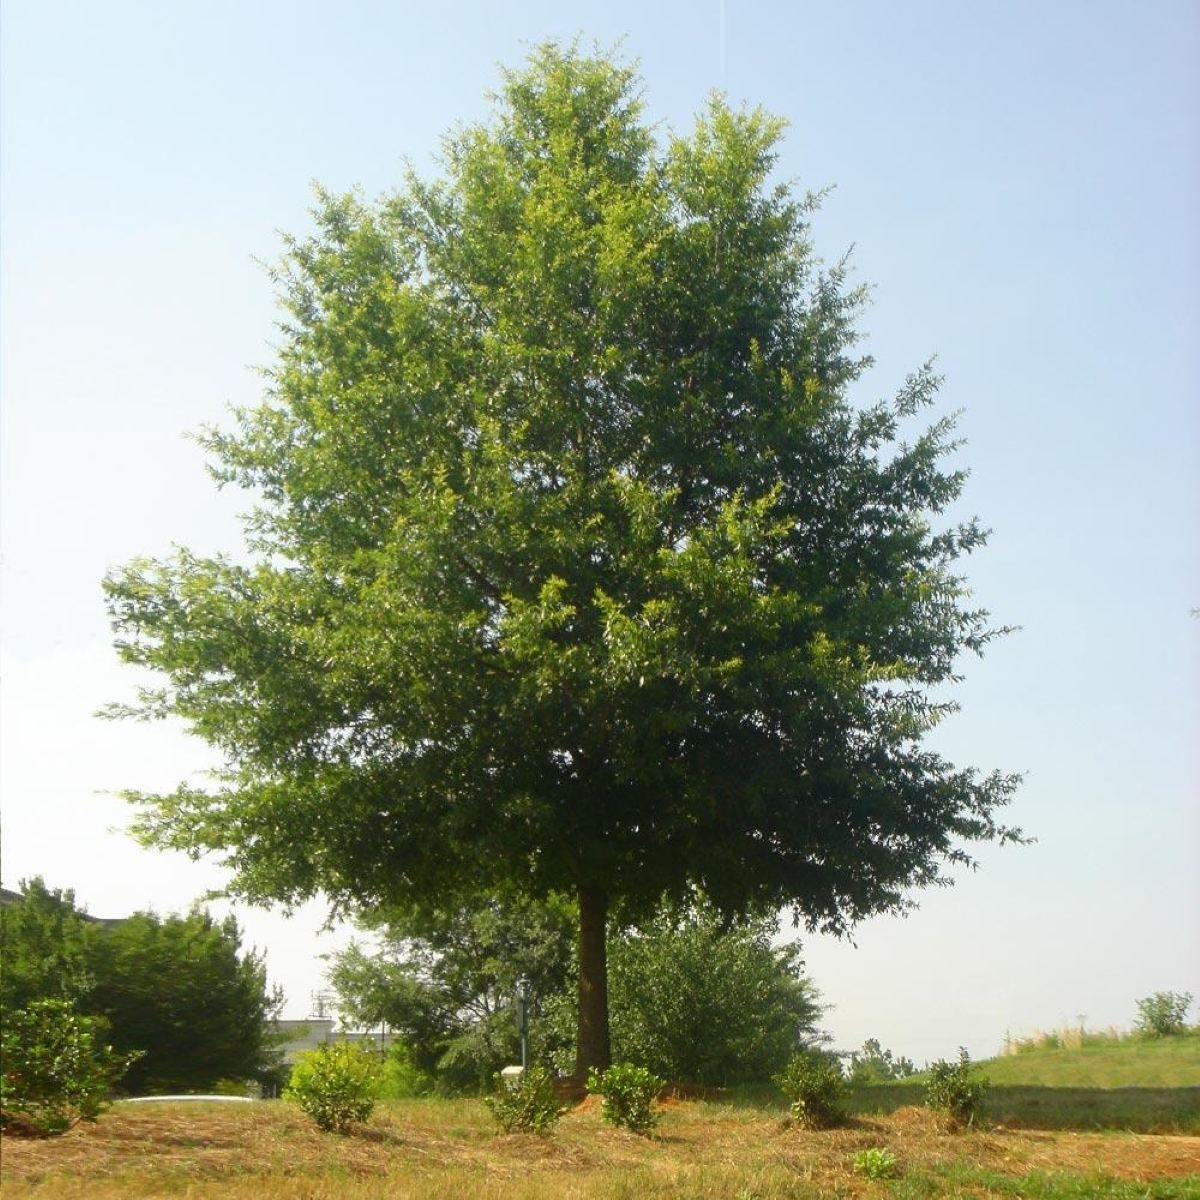 Willow oak tree